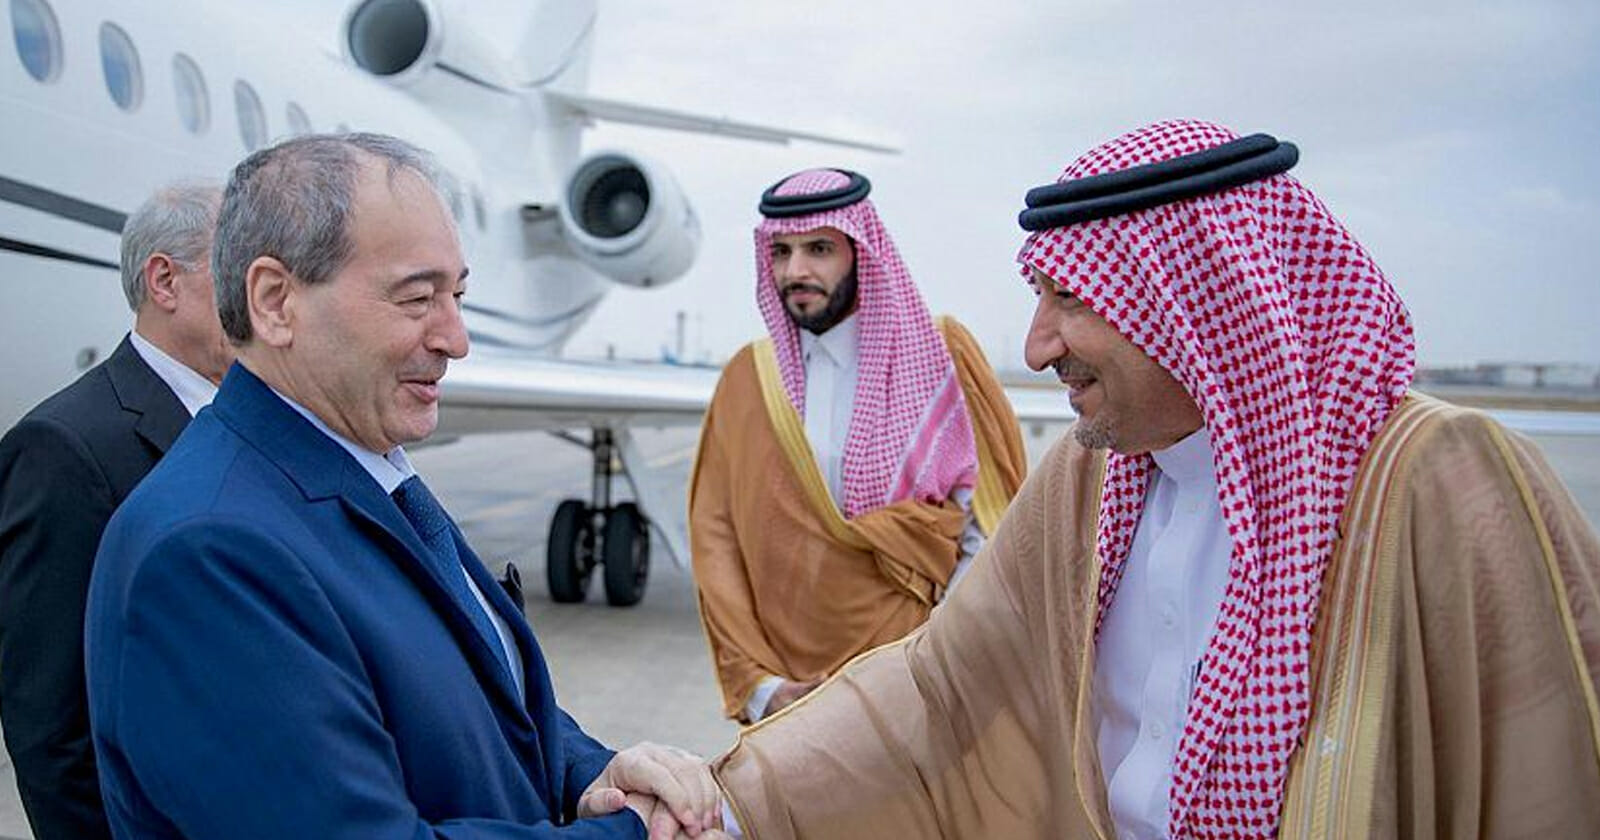 وصول وزير خارجية سوريا إلى السعودية watanserb.com